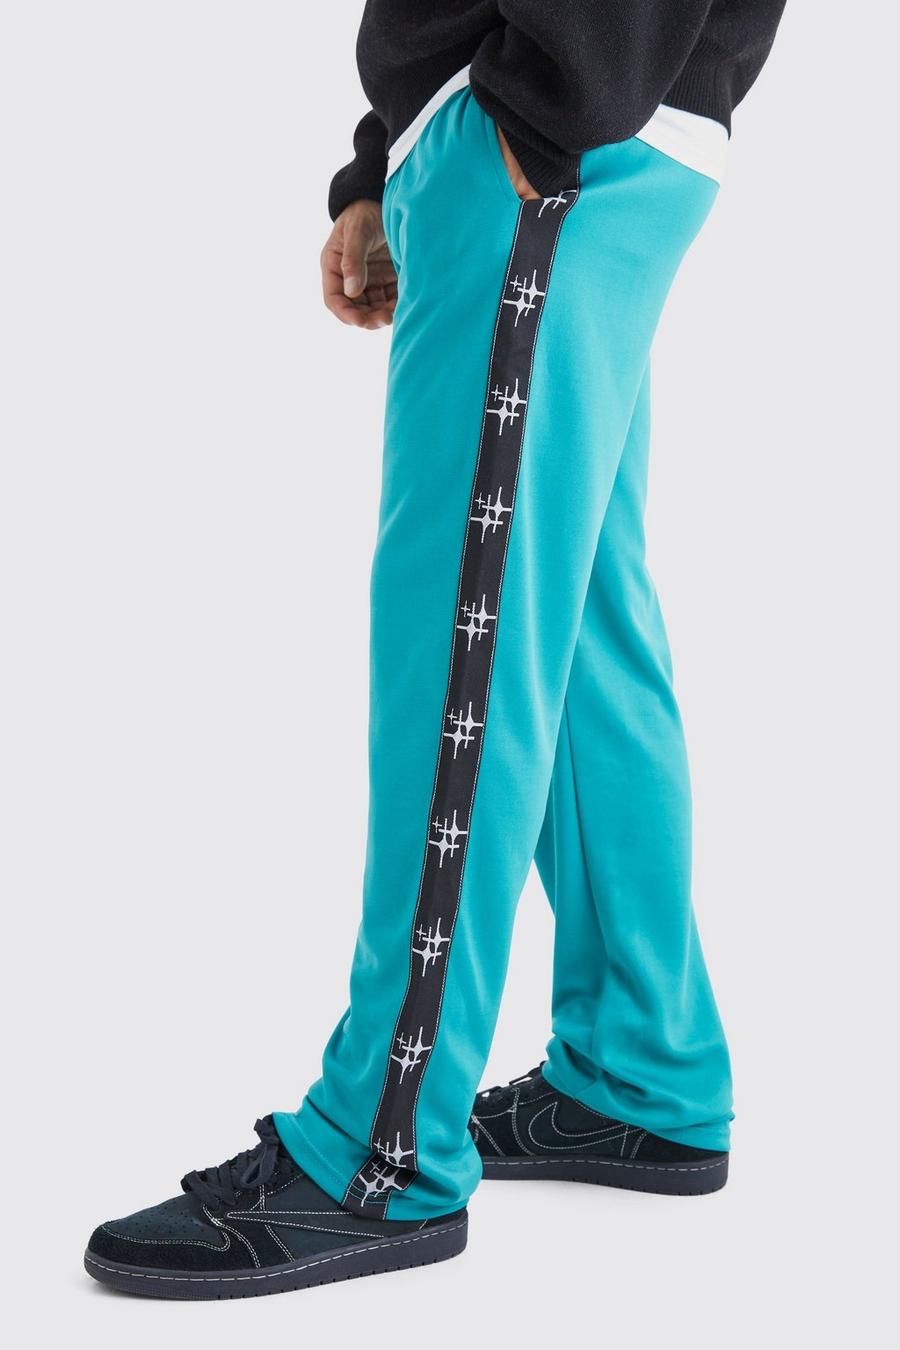 Pantaloni tuta oversize in tricot con striscia laterale, Teal